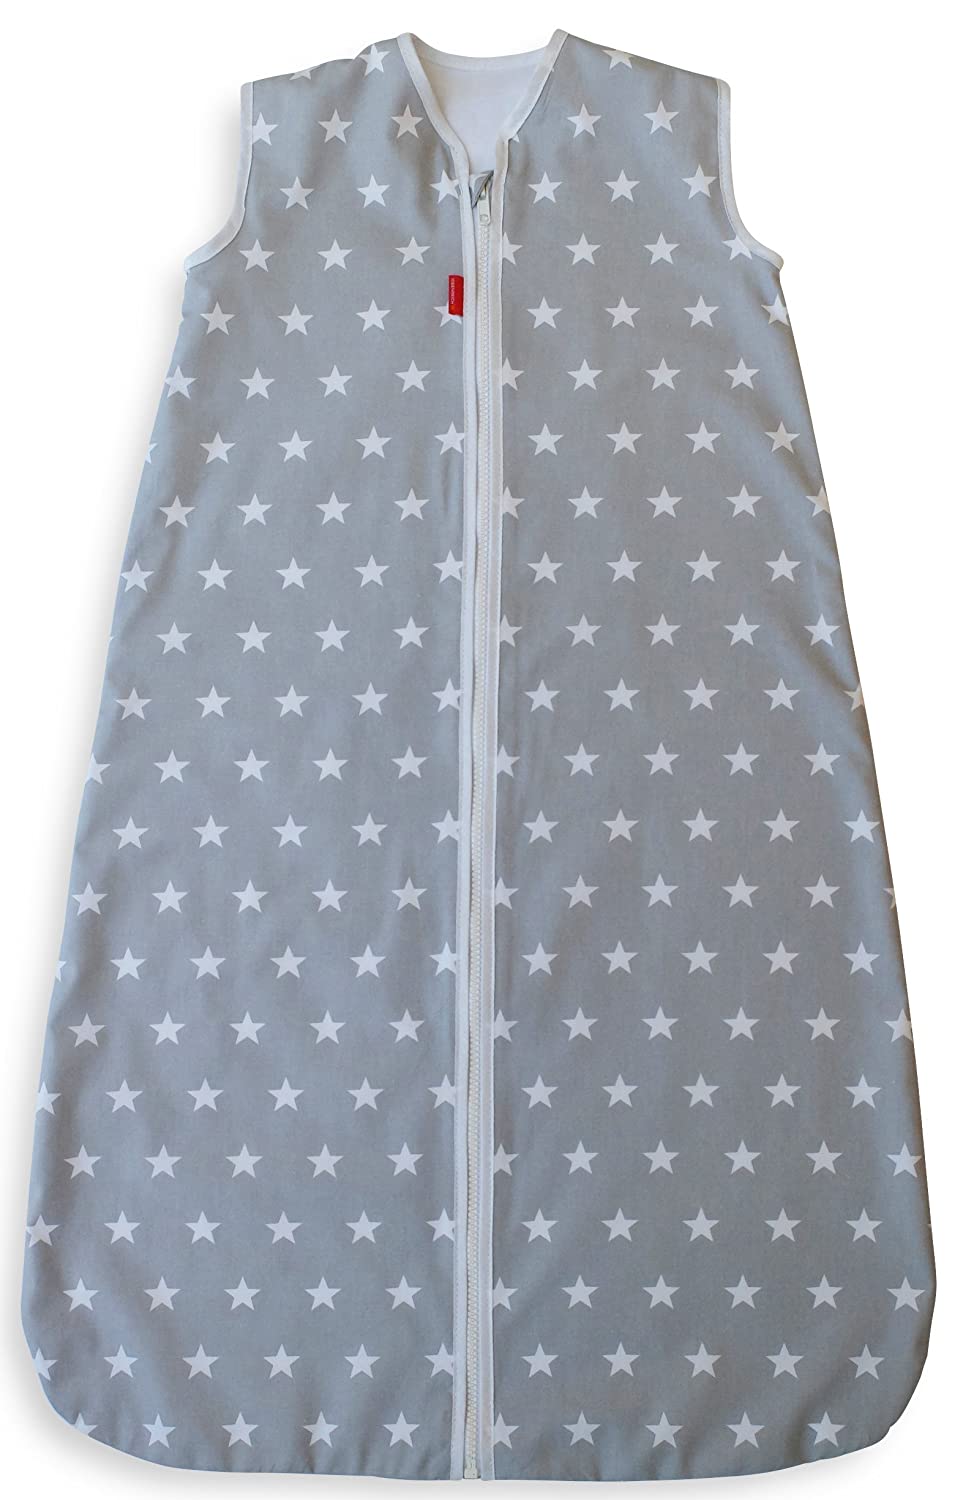 Ideenreich 2239 Star Sleeping Bag 110 cm Grey